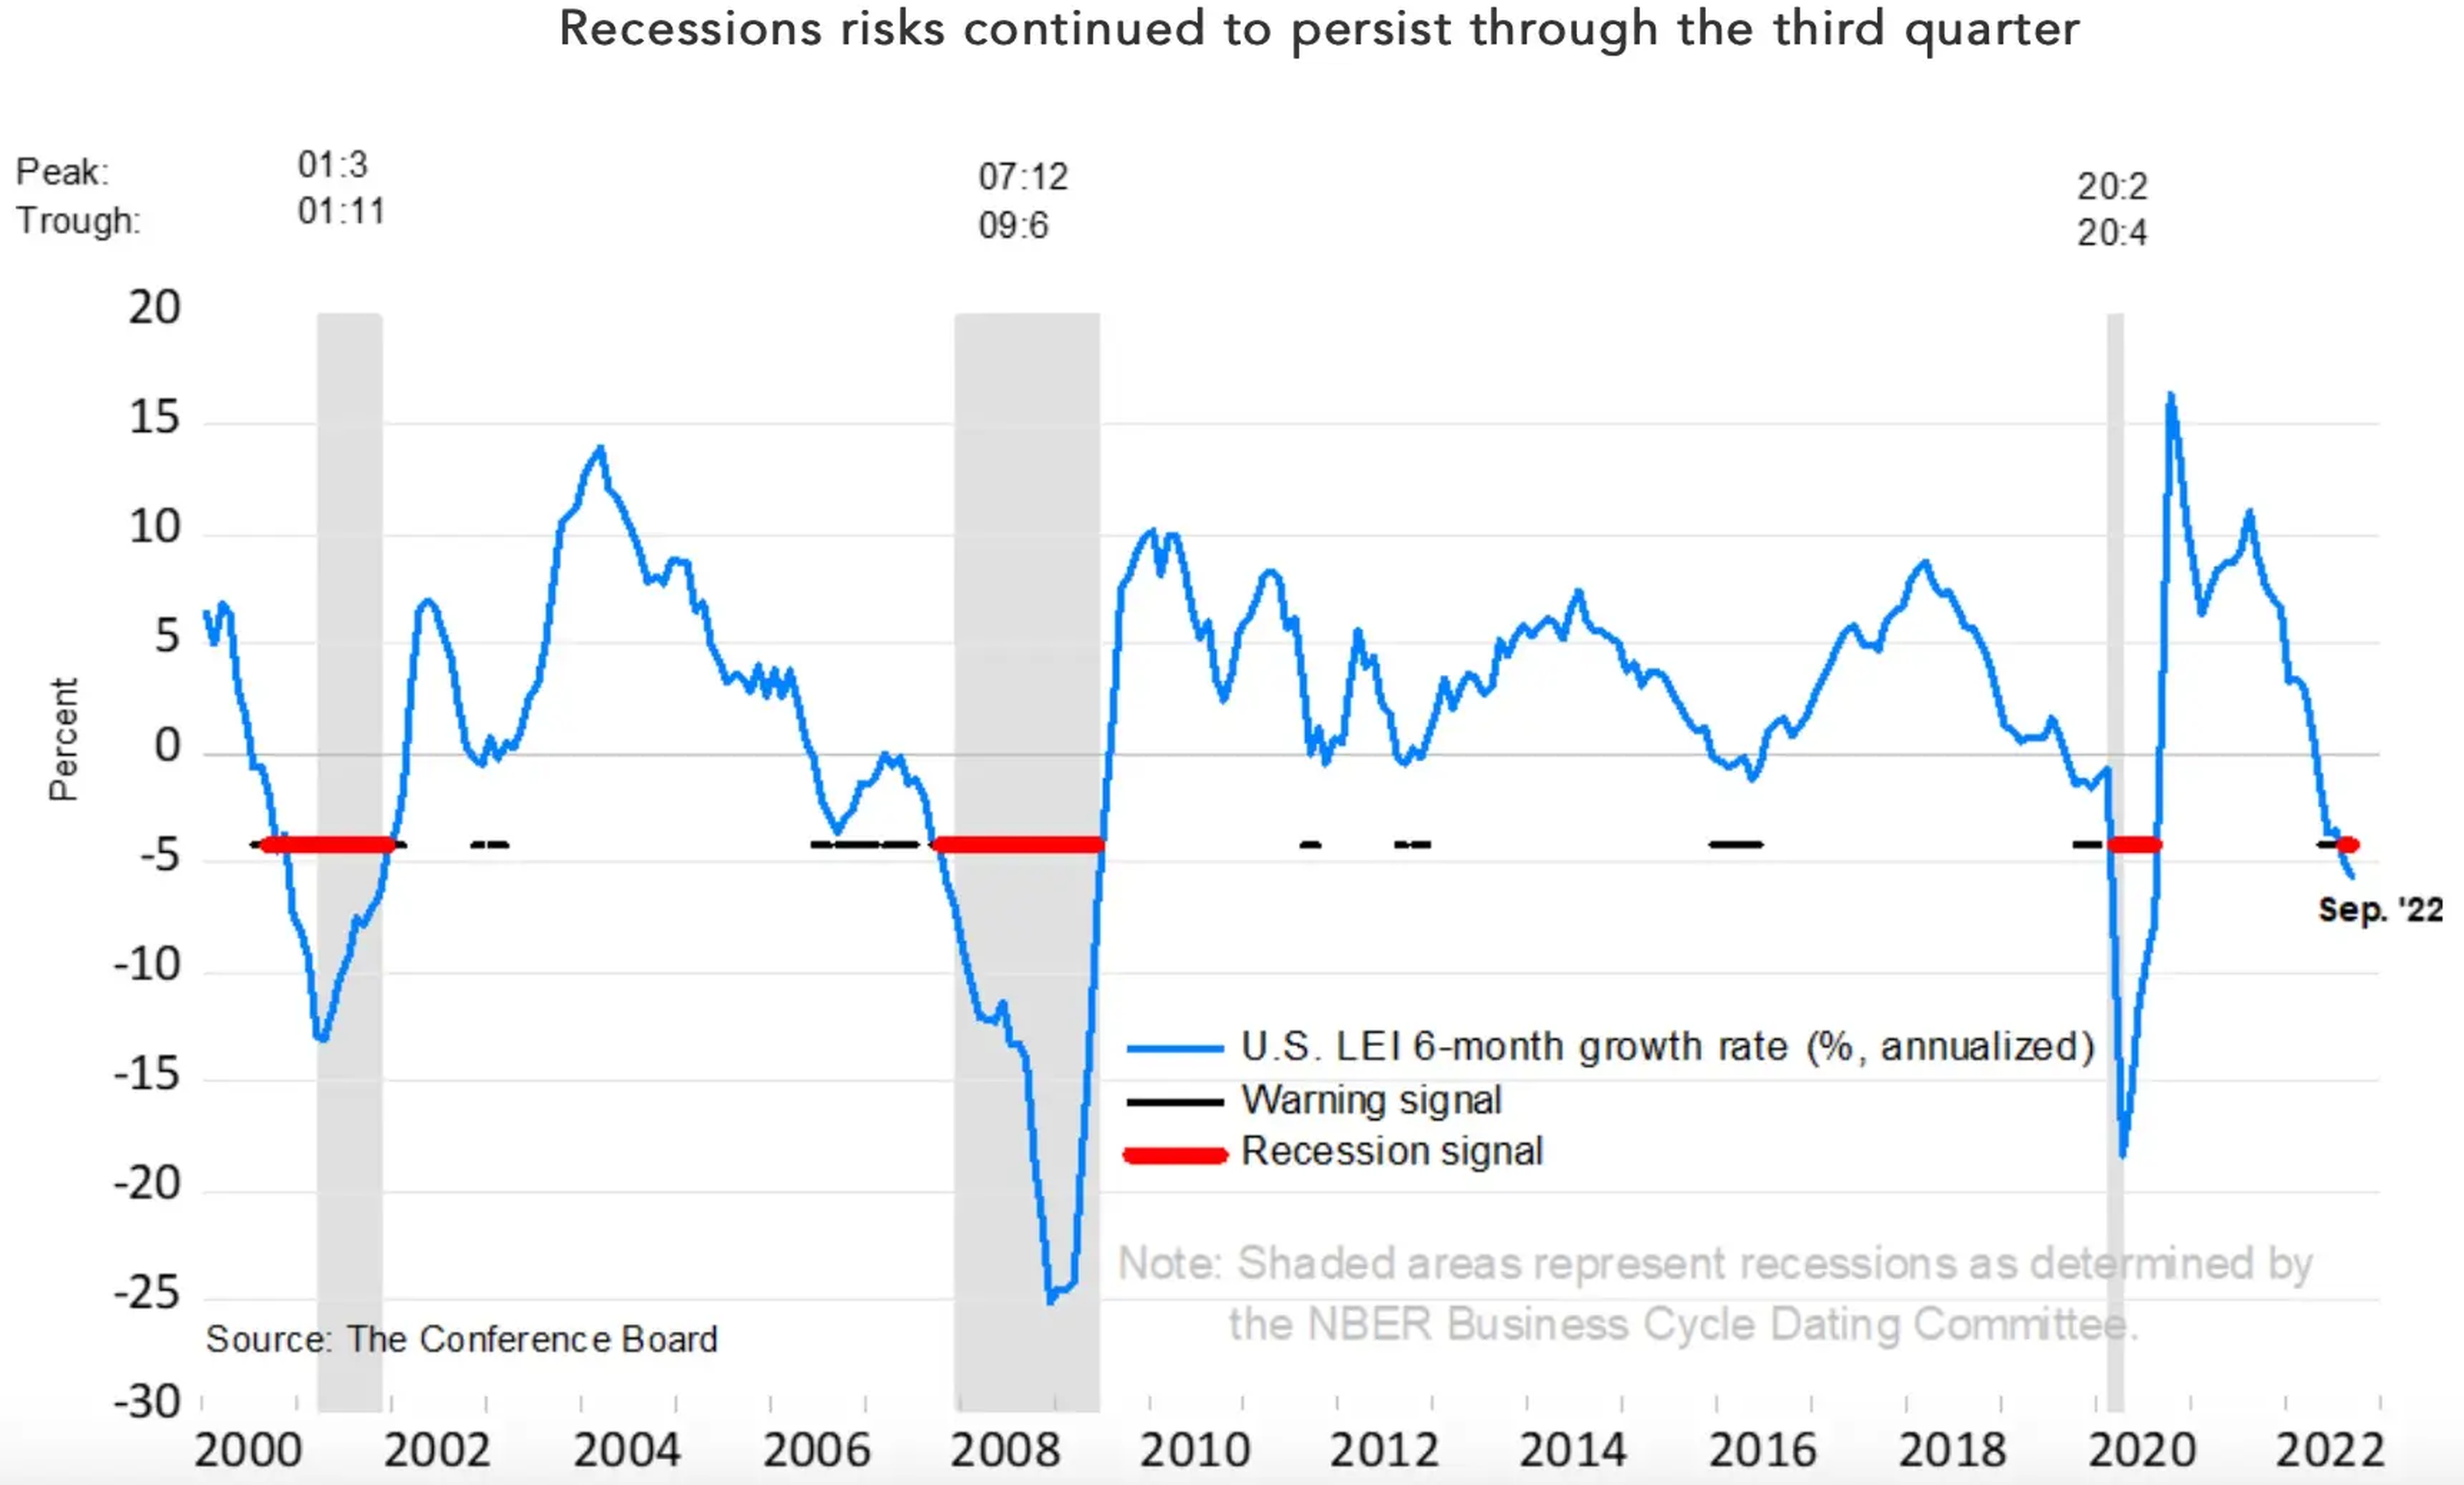 El riesgo de recesión puede continuar durante el tercer trimestre.